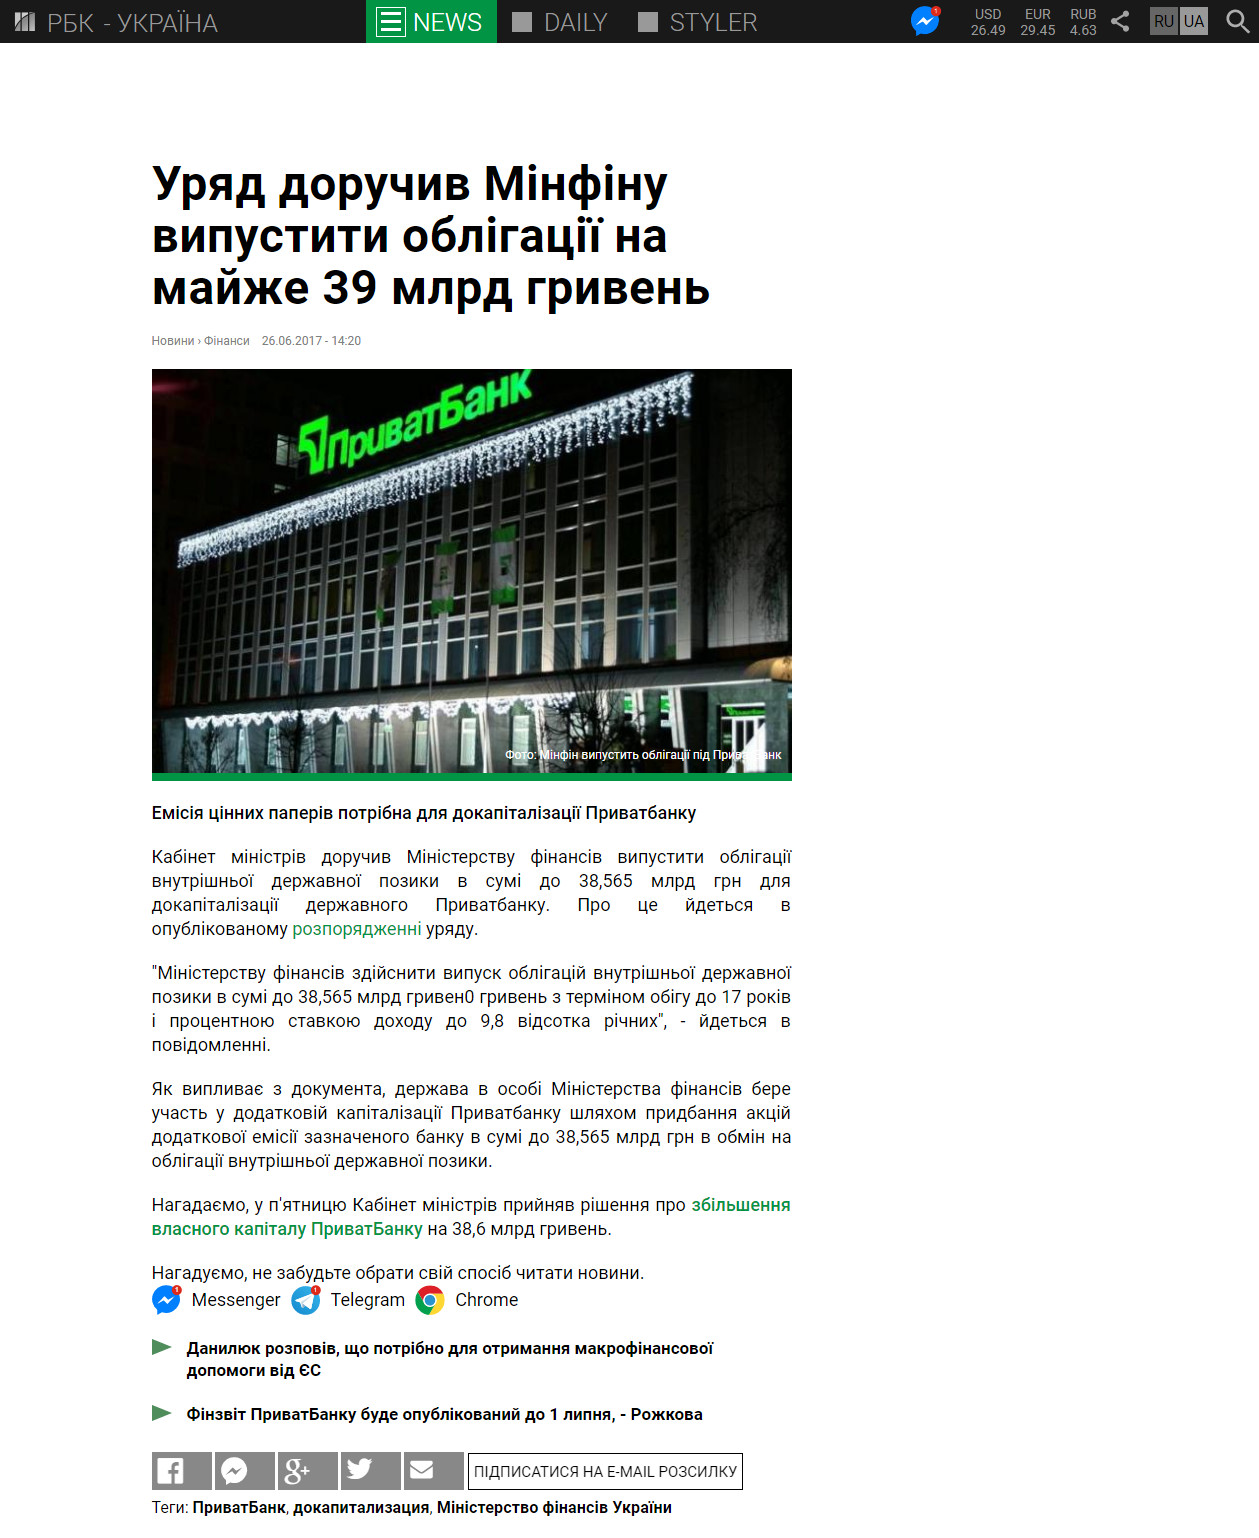 https://www.rbc.ua/ukr/news/pravitelstvo-poruchilo-minfinu-vypustit-obligatsii-1498476063.html